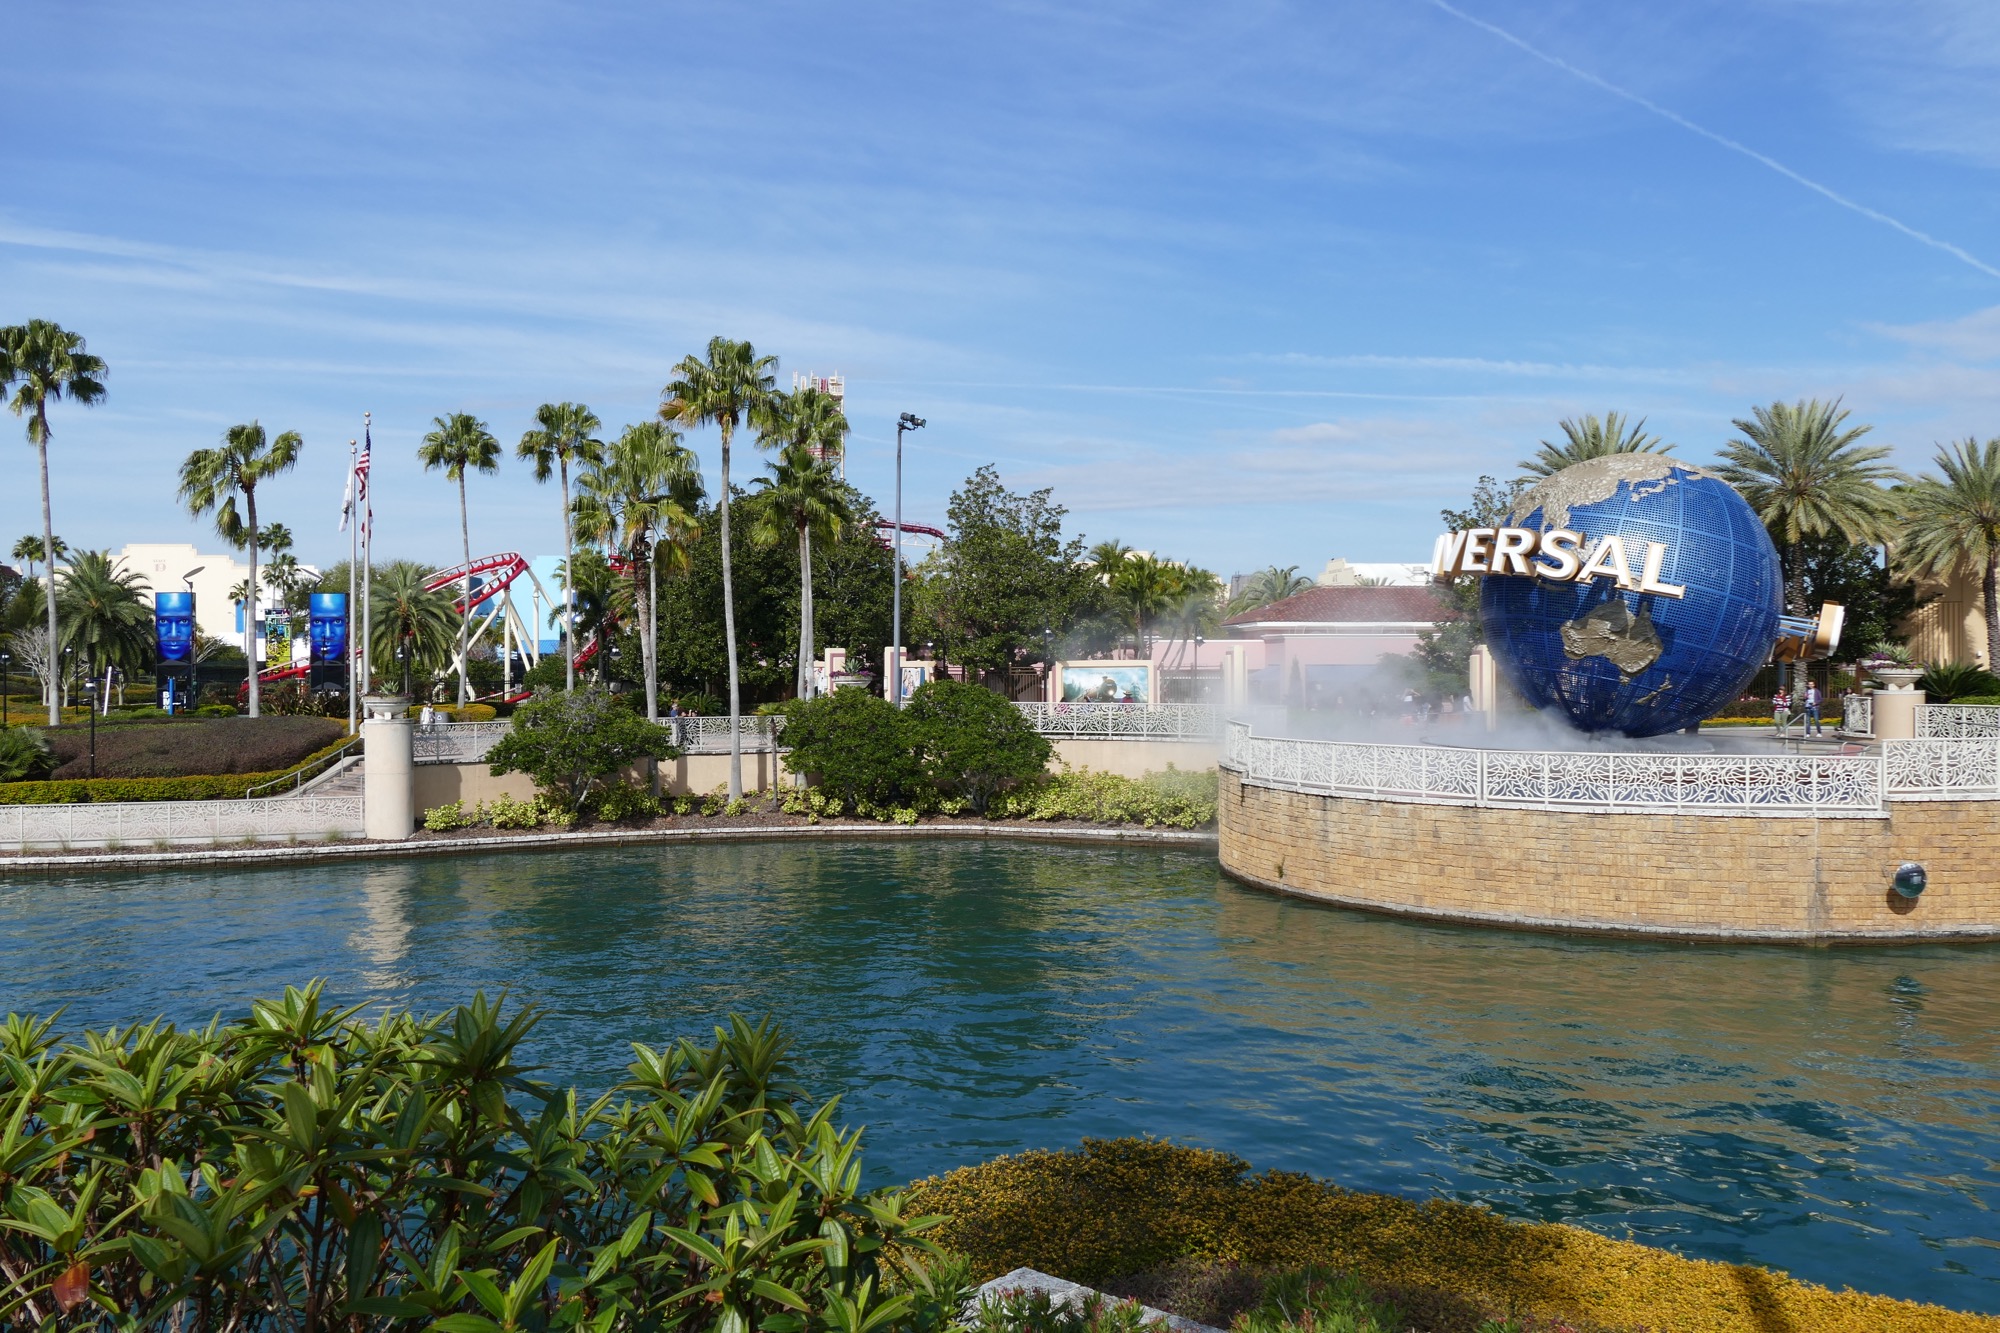 Entrance Lagoon at Universal Studios Florida